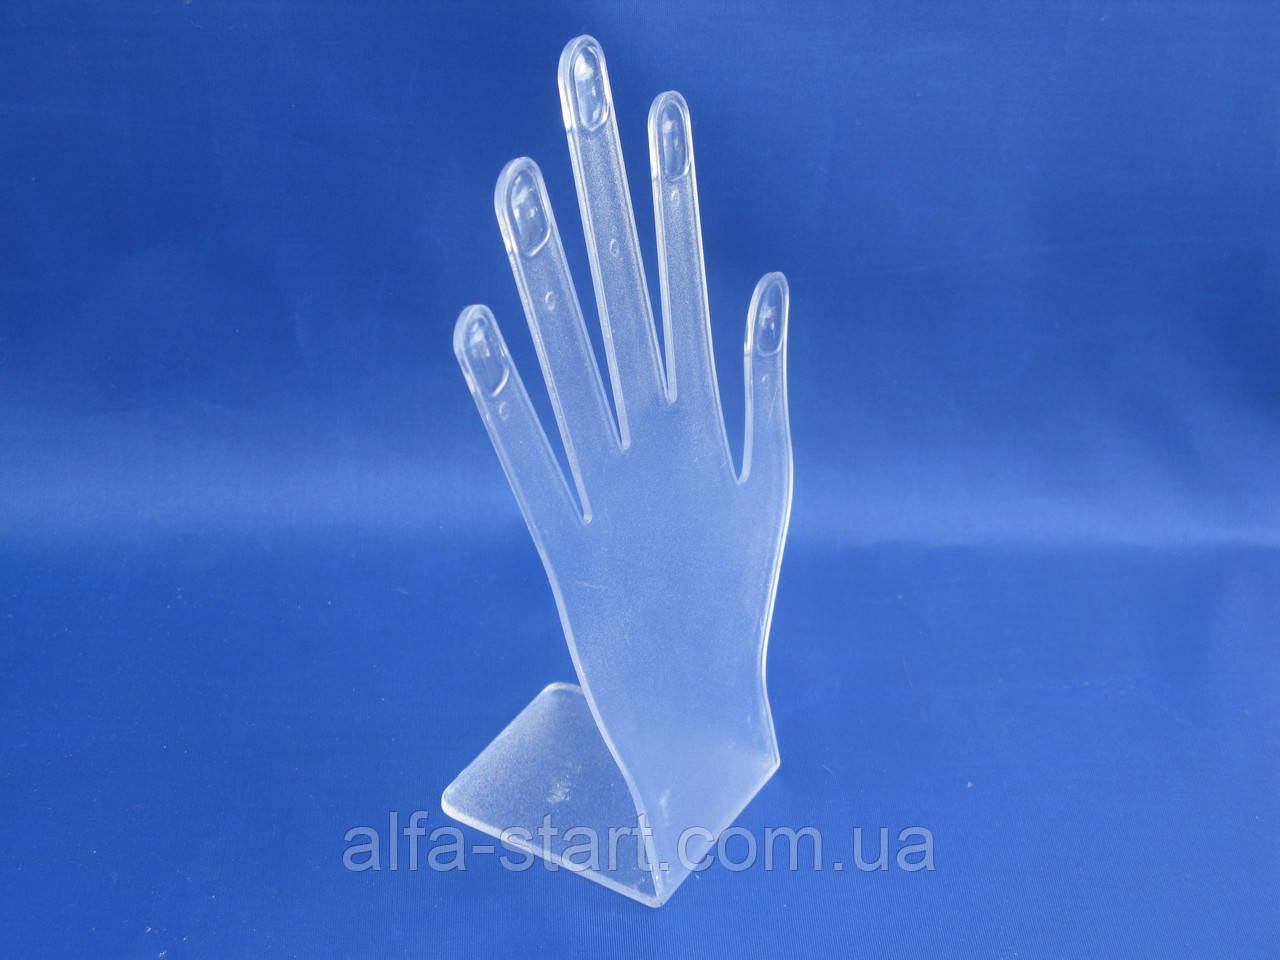 Пластикова рука-пензлик манекен для продажу чоловічих в'язаних рукавичок і глухелет